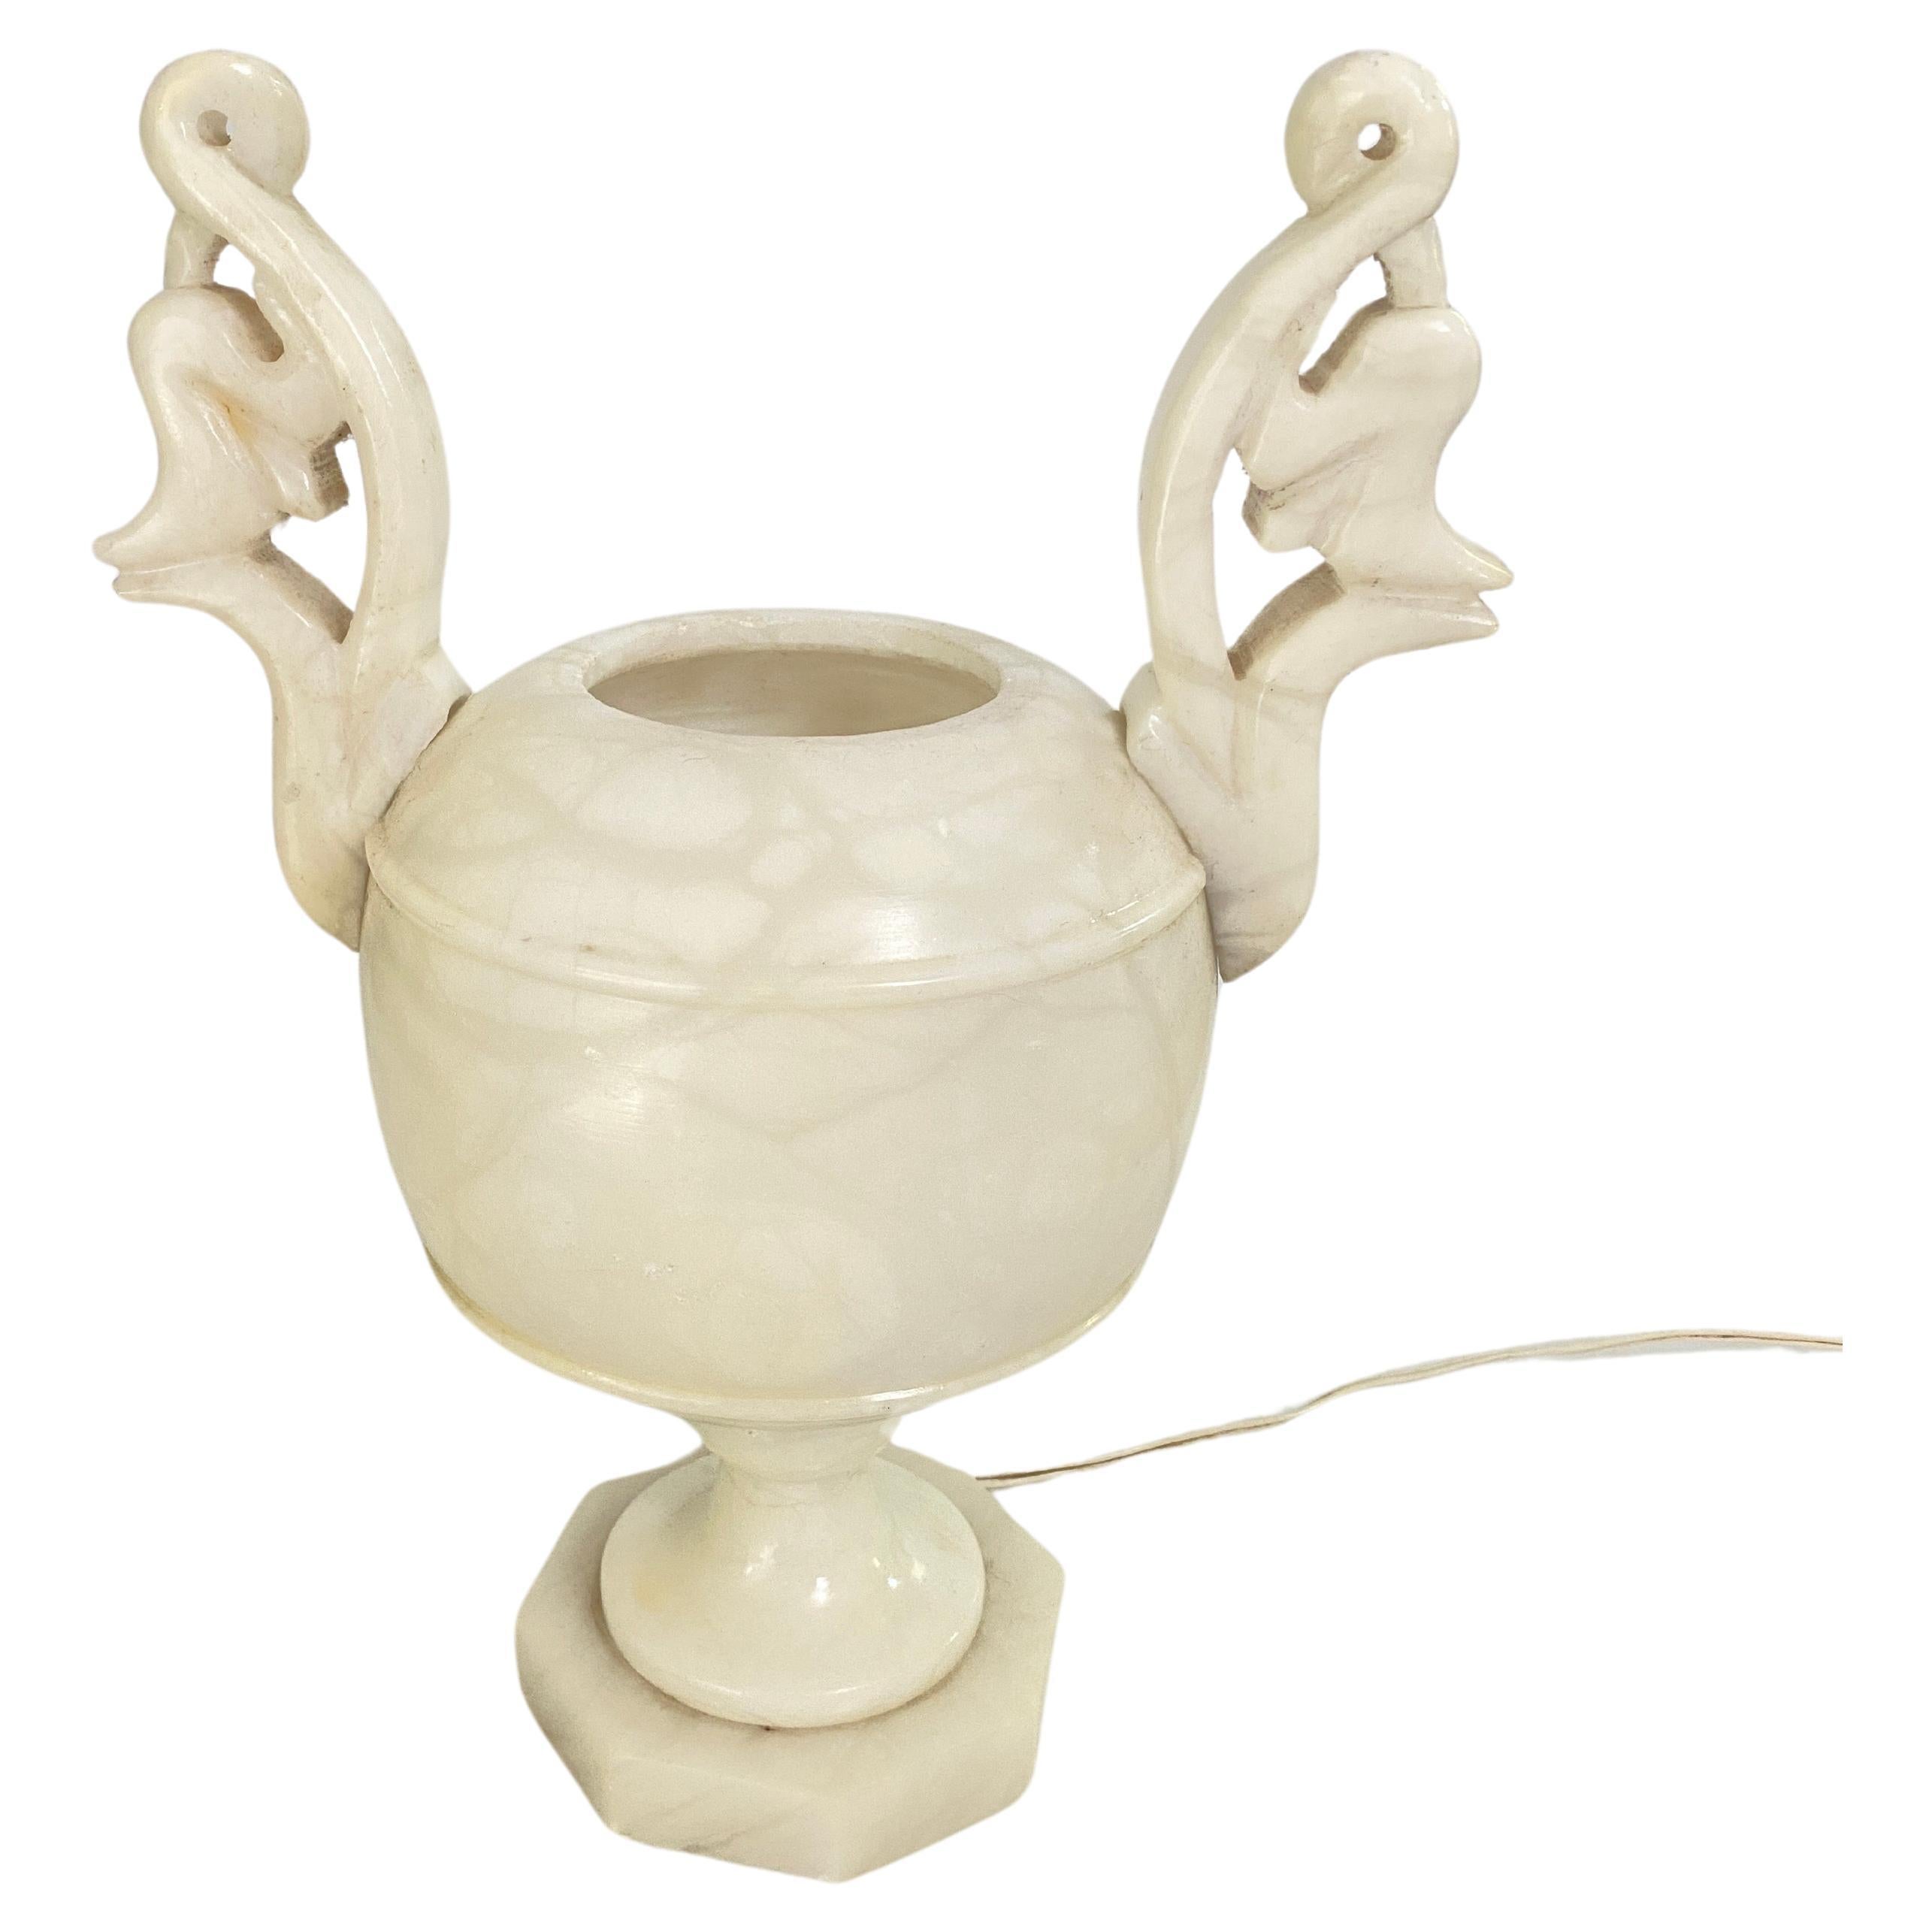 Lampe de table sculpturale en albâtre, d'époque Art déco, en forme d'urne, au design néoclassique, France, années 1960.
Cette élégante lampe-urnes néoclassique en albâtre sculpté sera un bel ajout à une table console ou à une table d'appoint.
Il